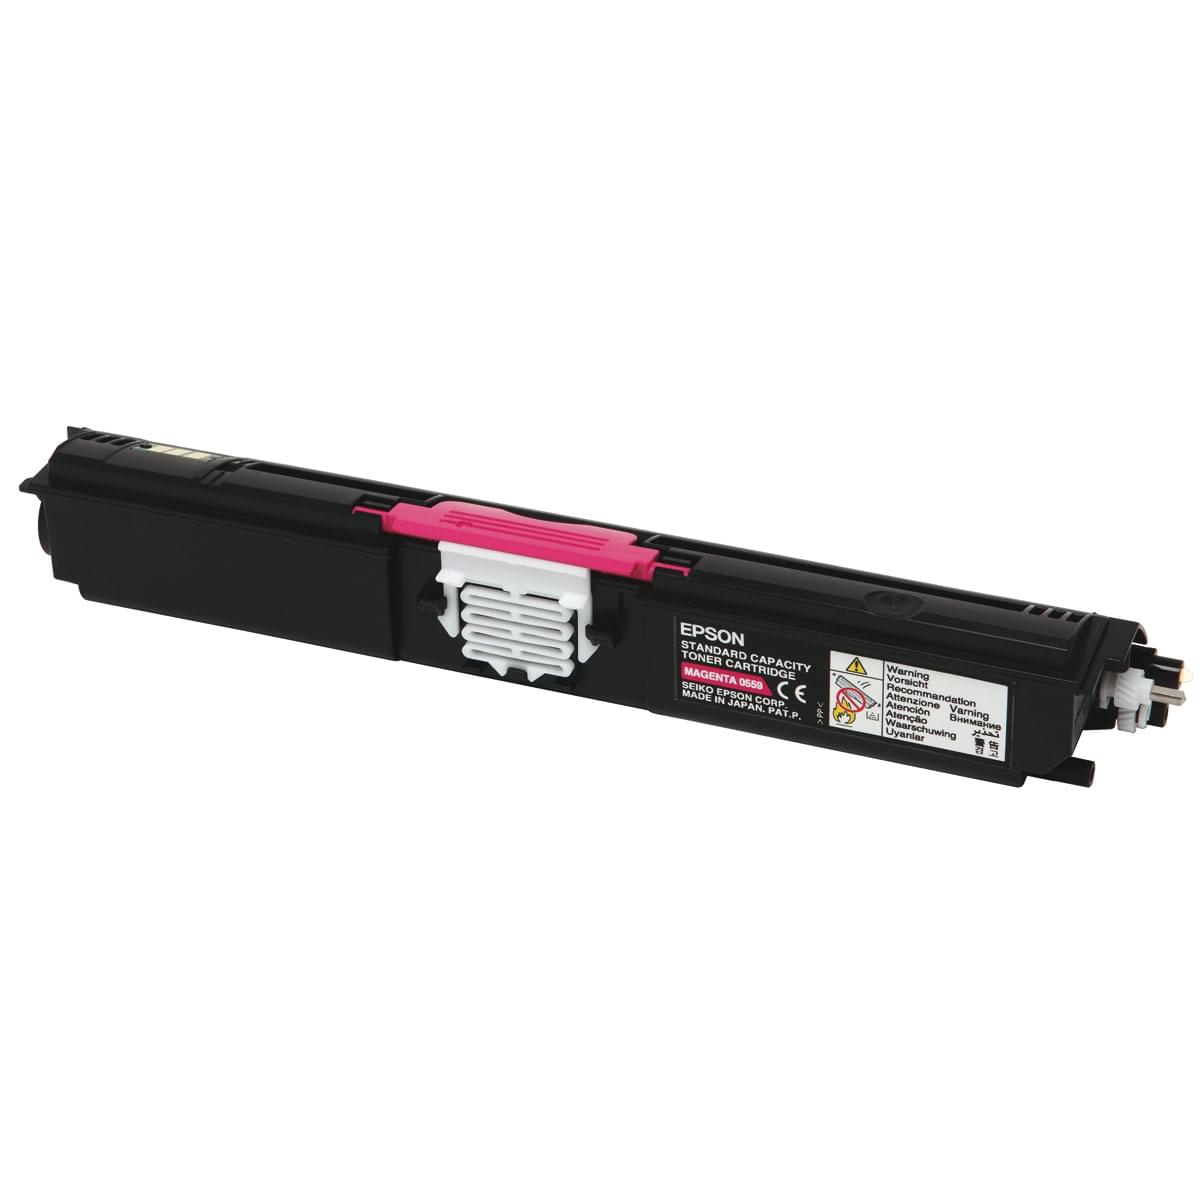 Toner Magenta 1600p - C13S050559 pour imprimante Laser Epson - 0